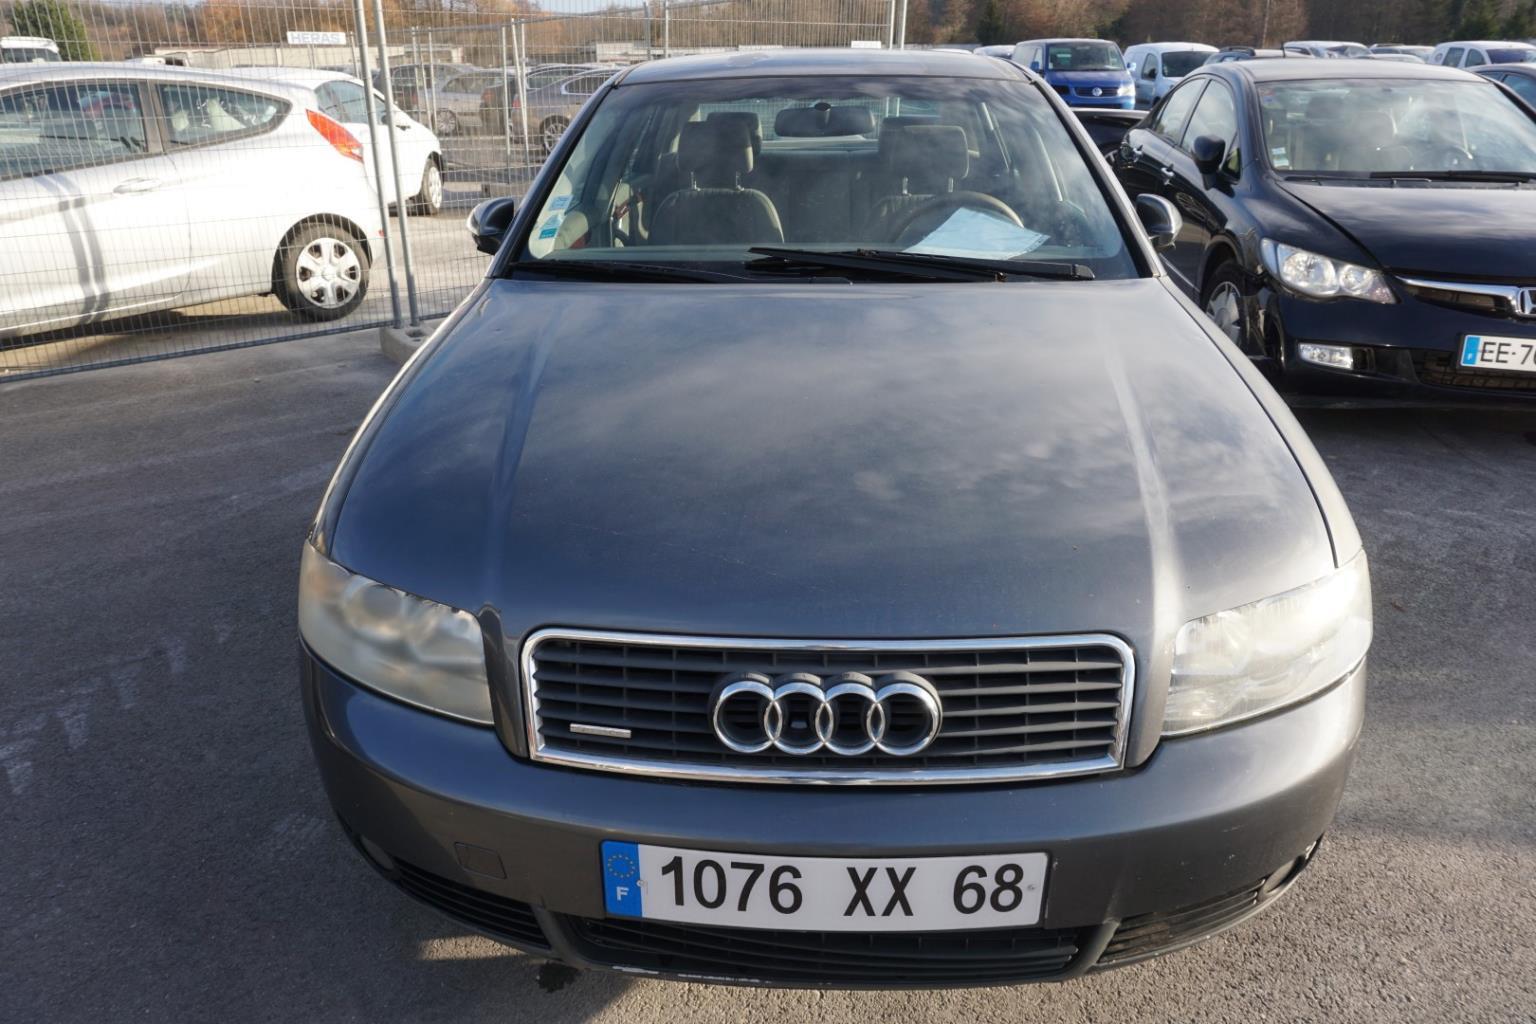 ② A vendre autoradio Audi A4 B6-B7 2001 à 2008 — Autres pièces